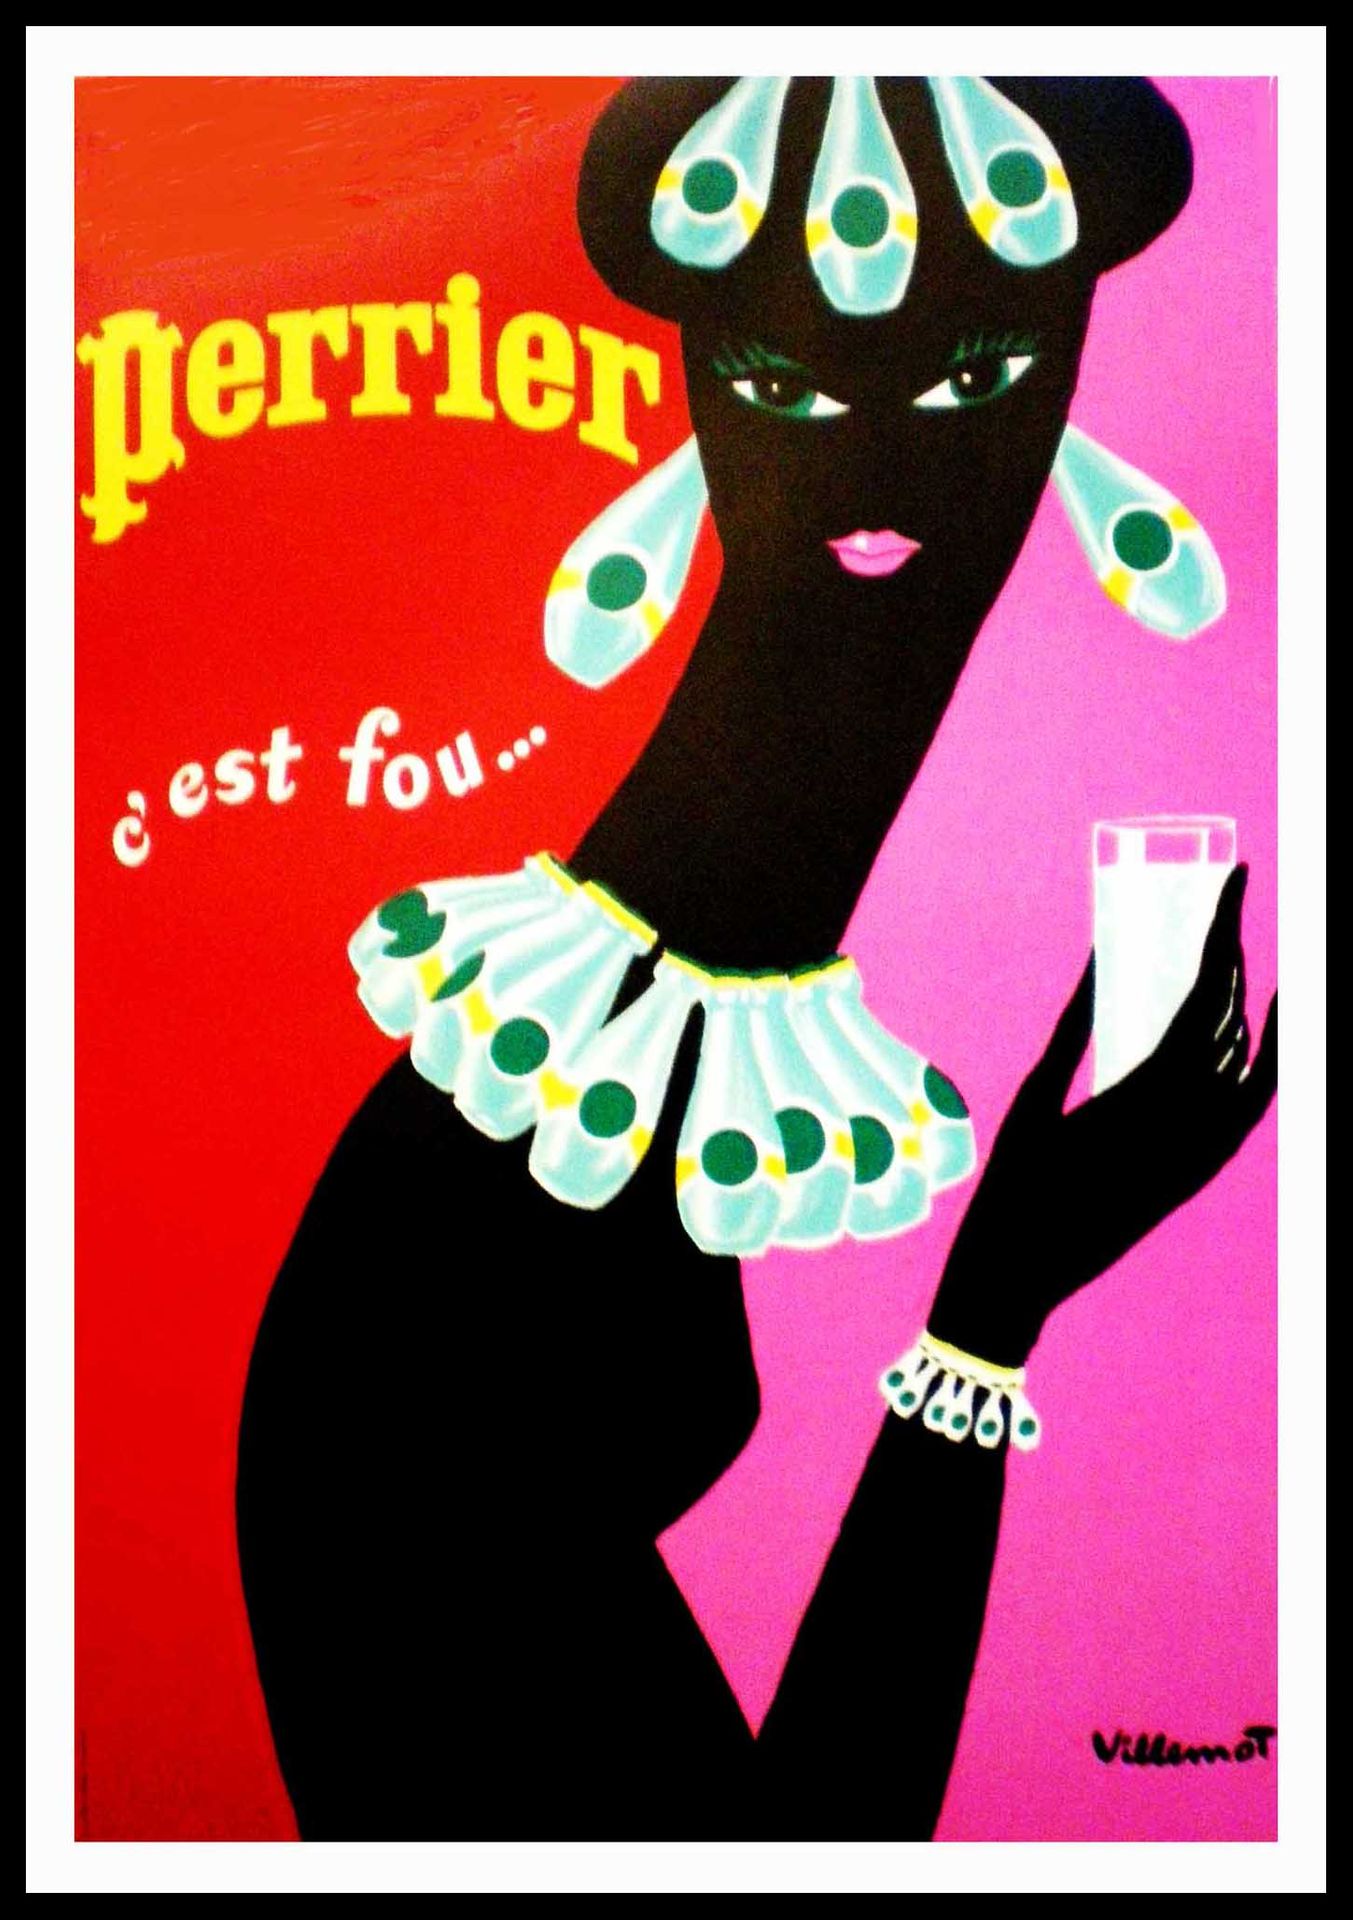 Bernard VILLEMOT Bernard Villemot

Perrier c'est fou, 1977

Original Poster

Nic&hellip;